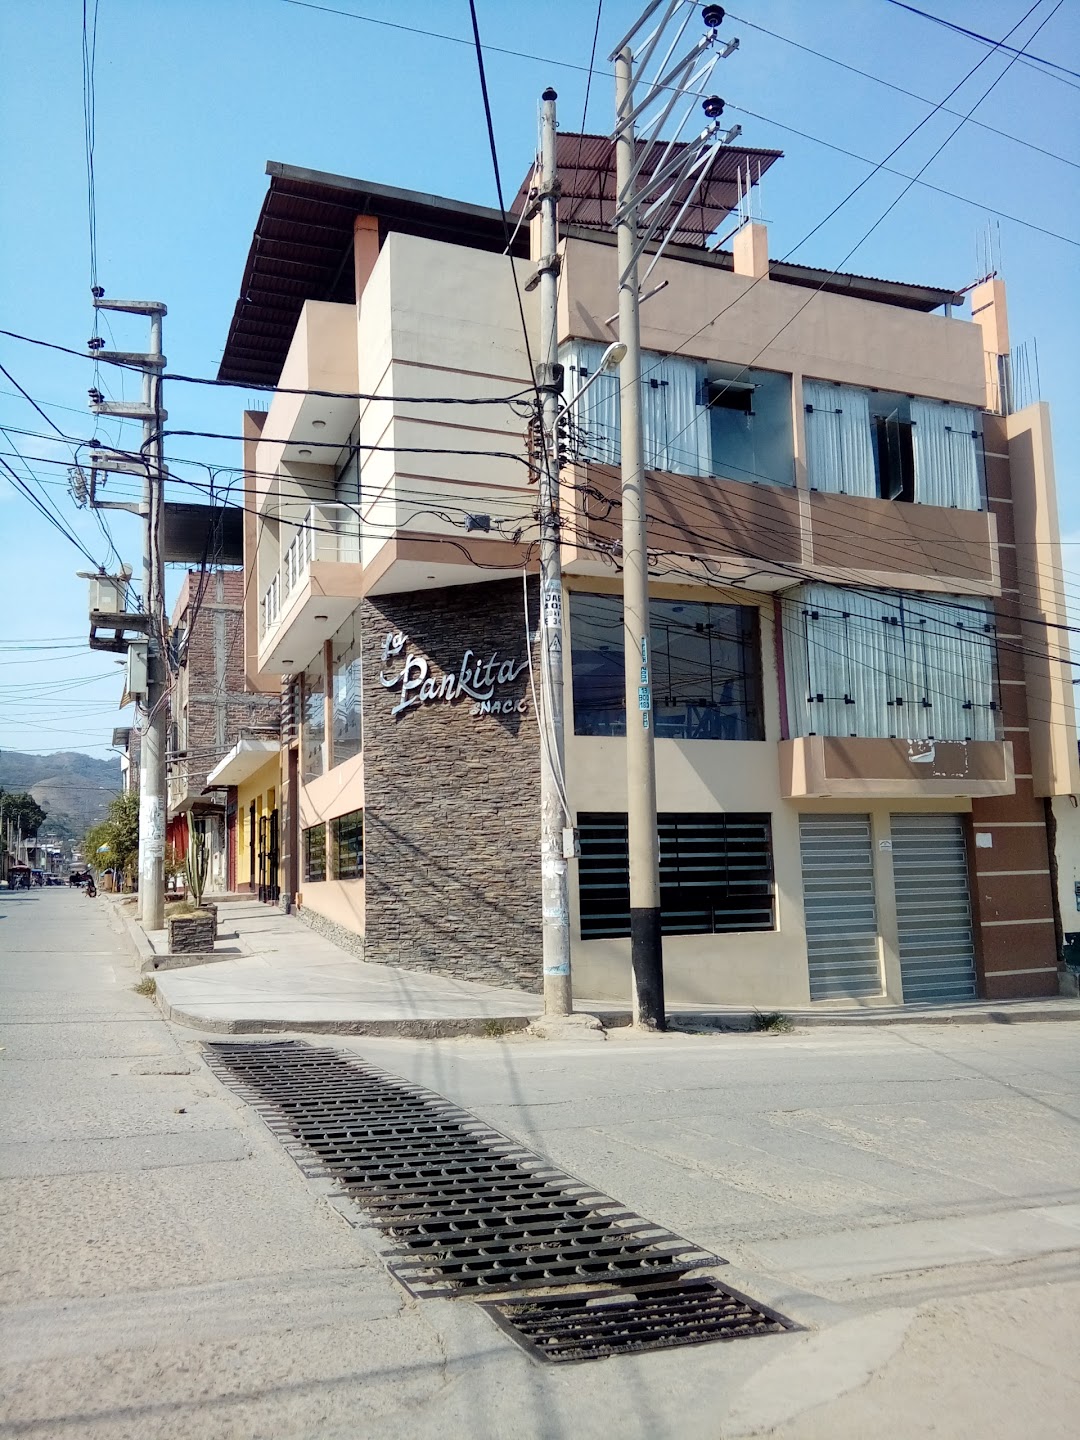 Restaurante La Pankita